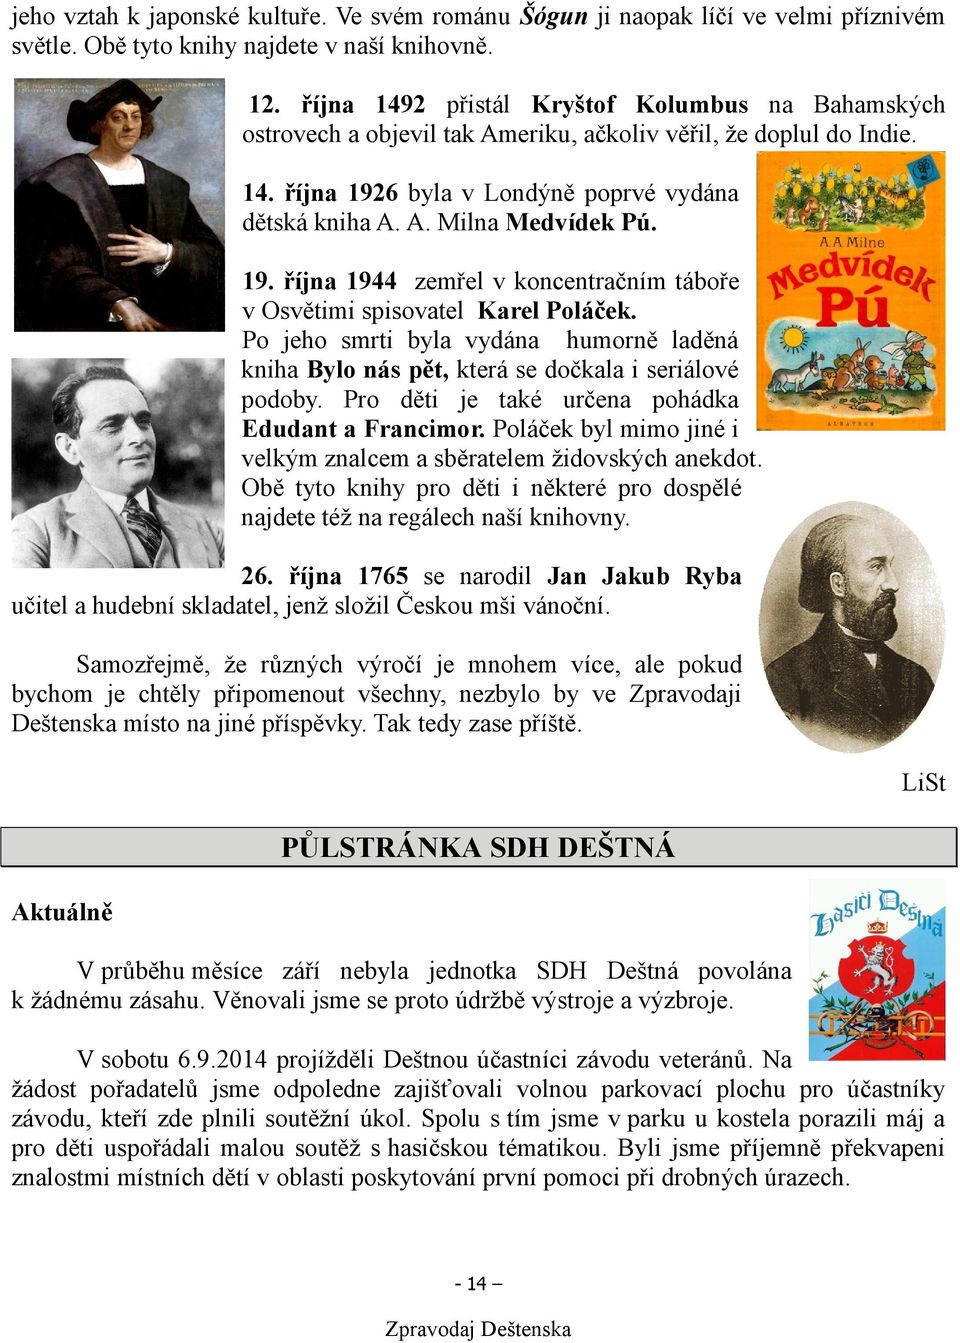 19. října 1944 zemřel v koncentračním táboře v Osvětimi spisovatel Karel Poláček. Po jeho smrti byla vydána humorně laděná kniha Bylo nás pět, která se dočkala i seriálové podoby.